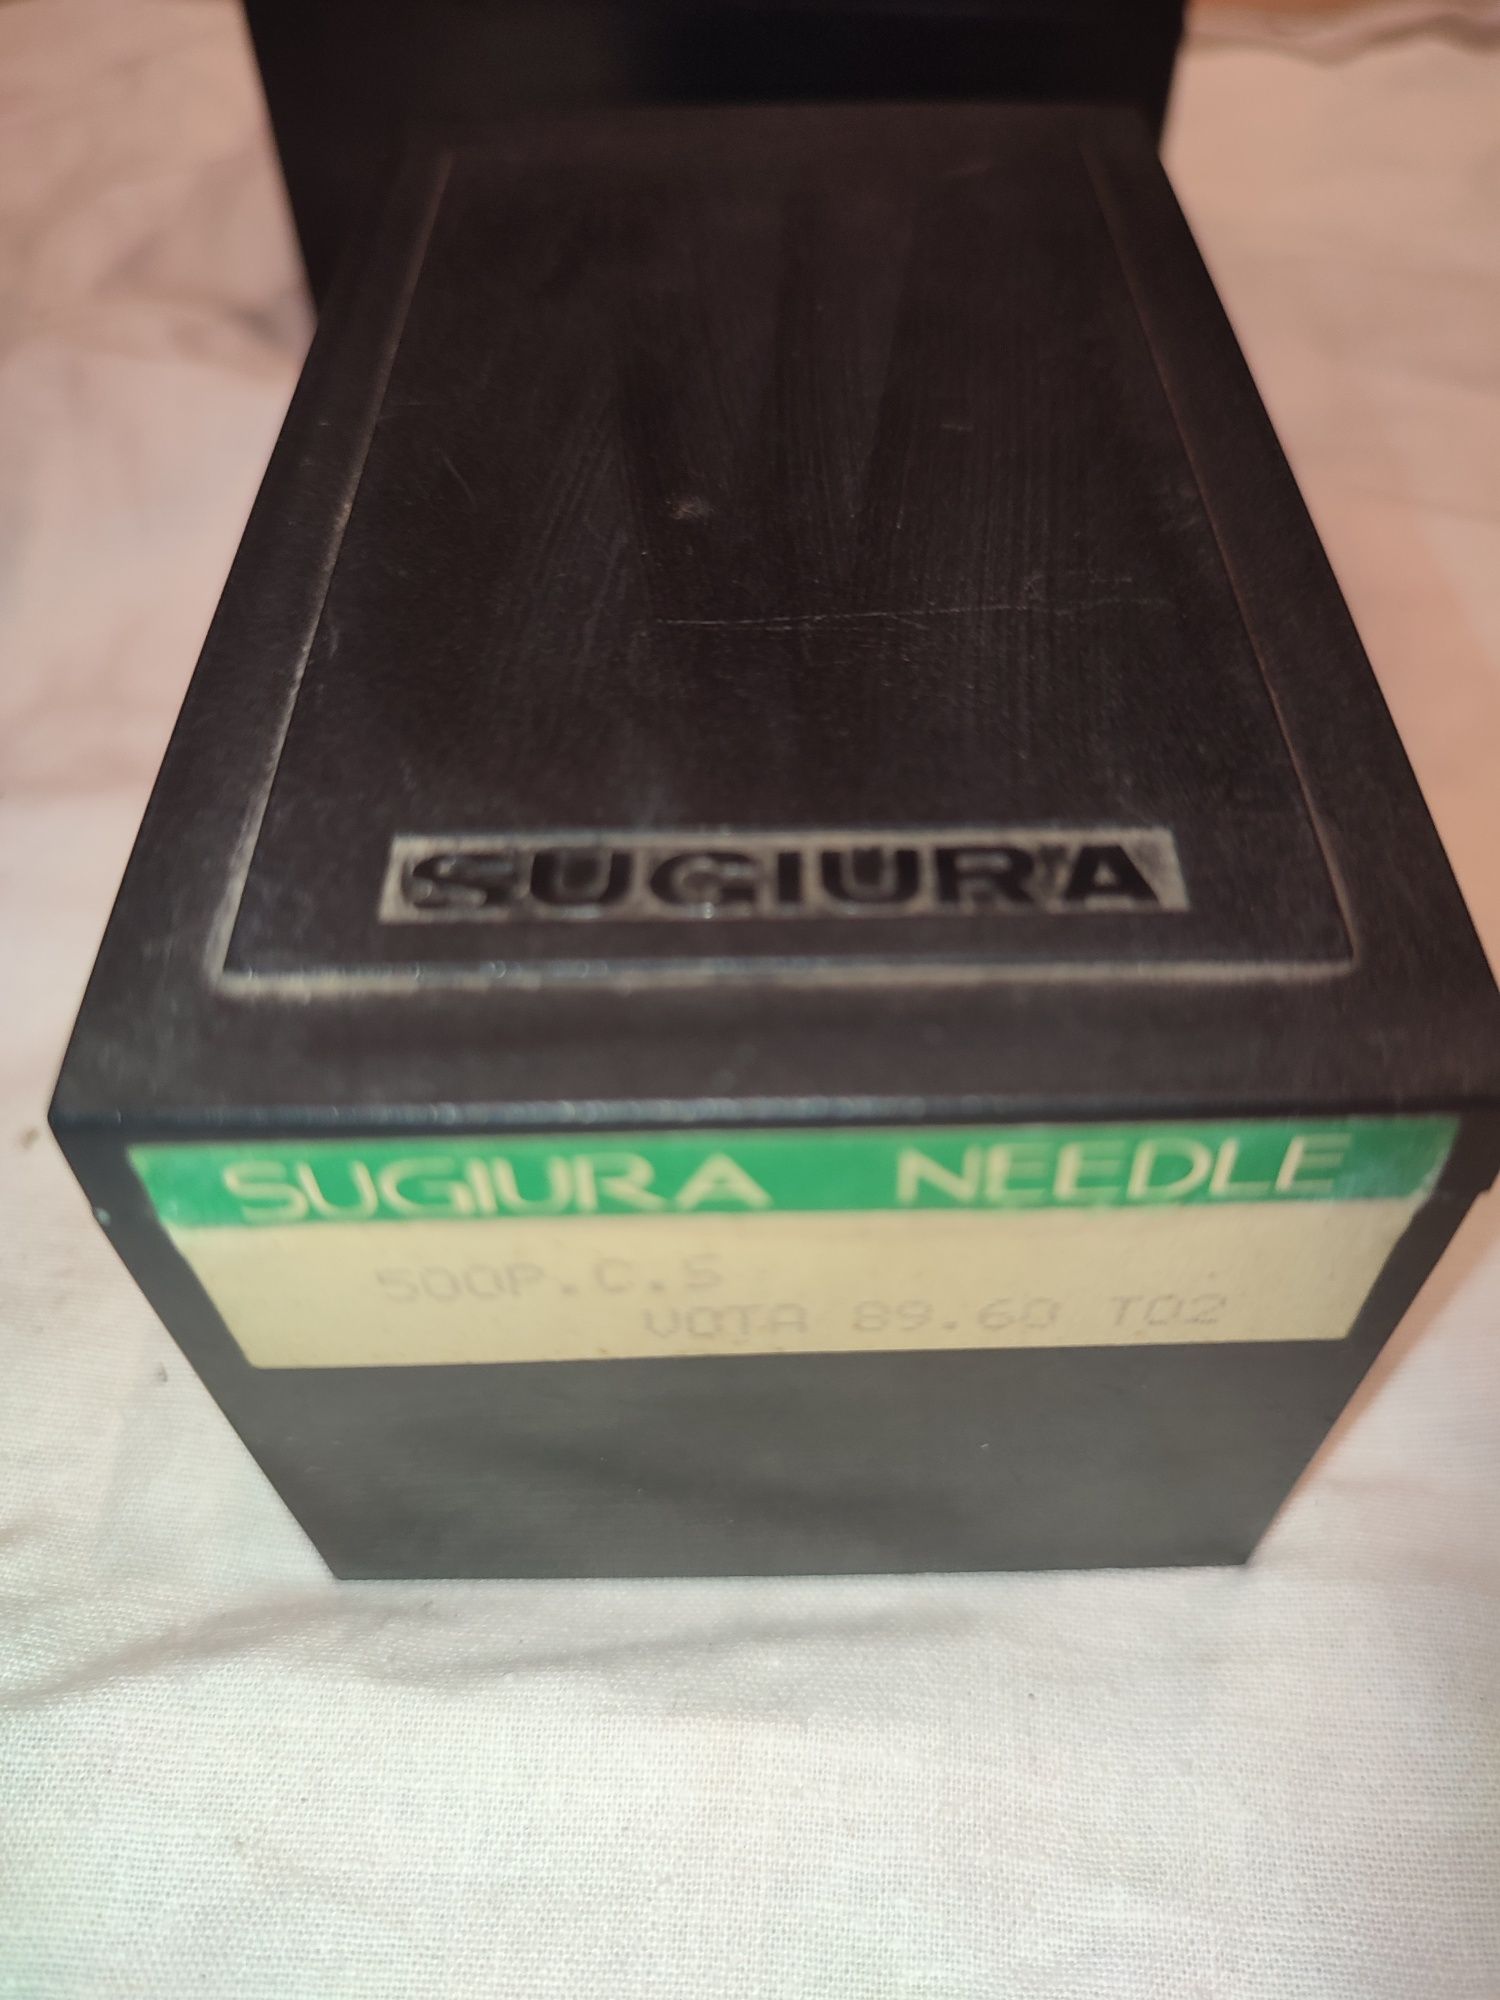 Голка для в'язальних машин Sigiura needle 89.60